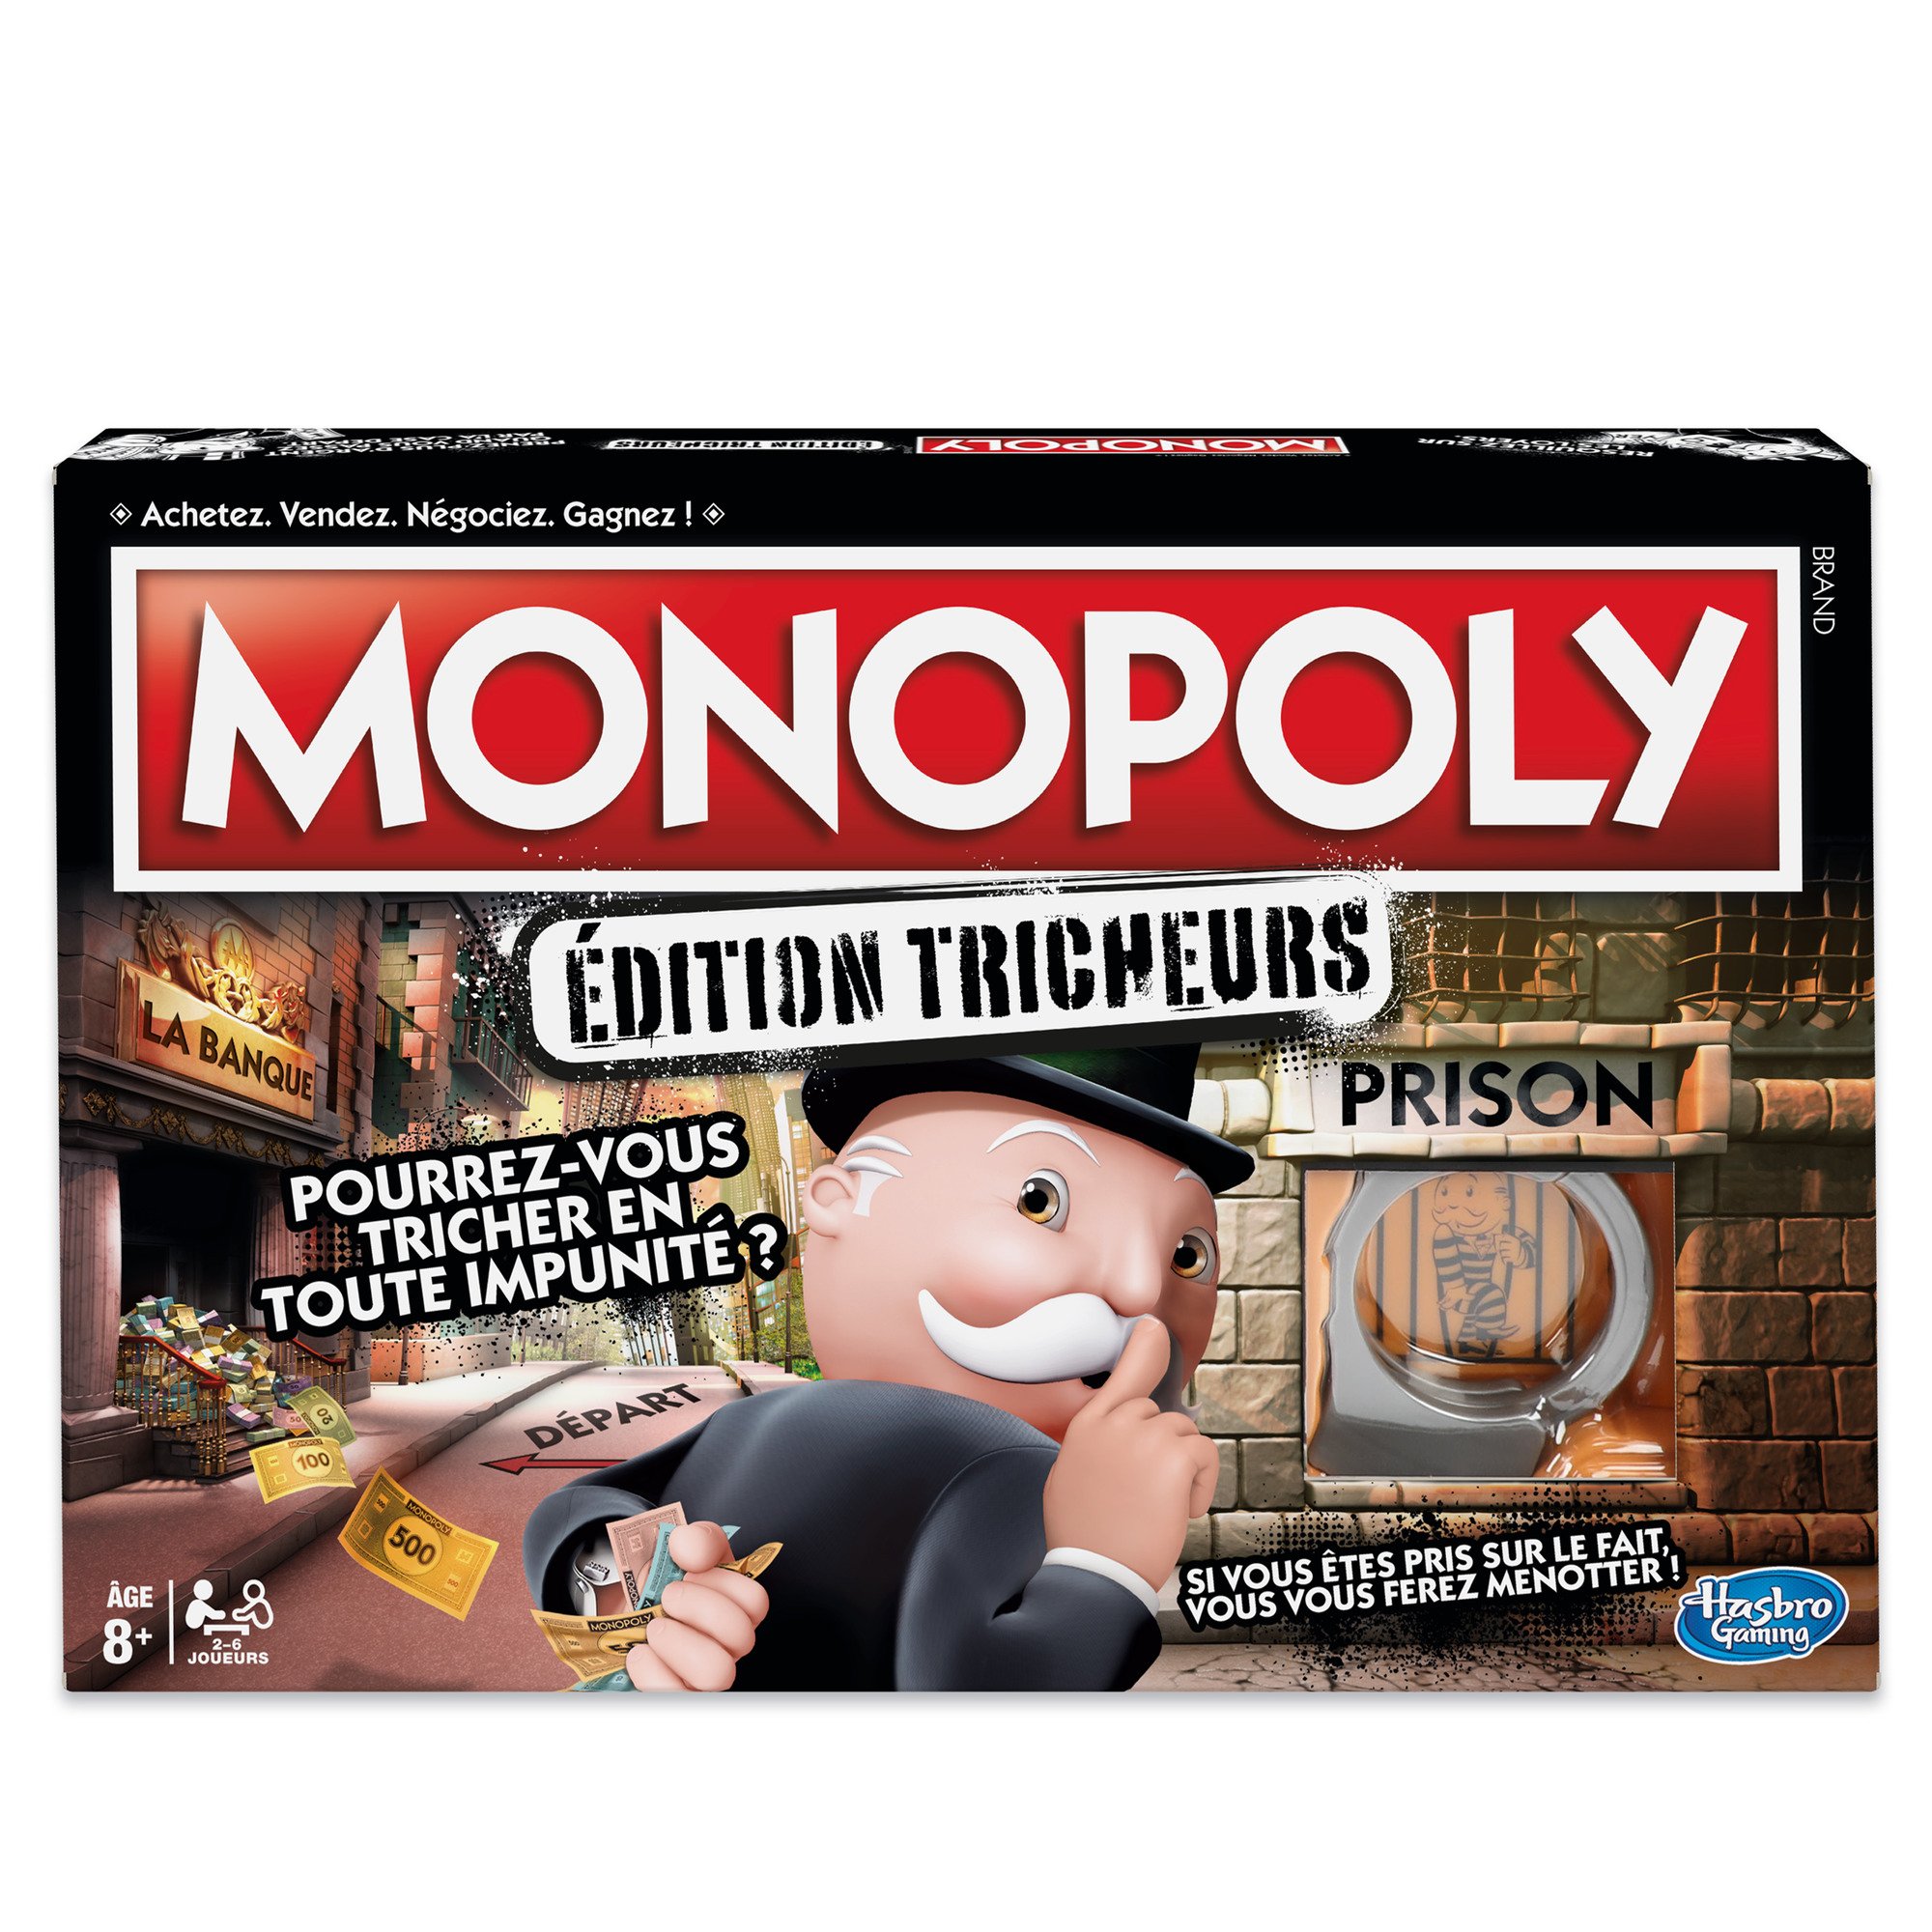 Monopoly Dreiecks, Gesellschaftsspiel, Brettspiel für die Familie, französische Version, ab 8 Jahren